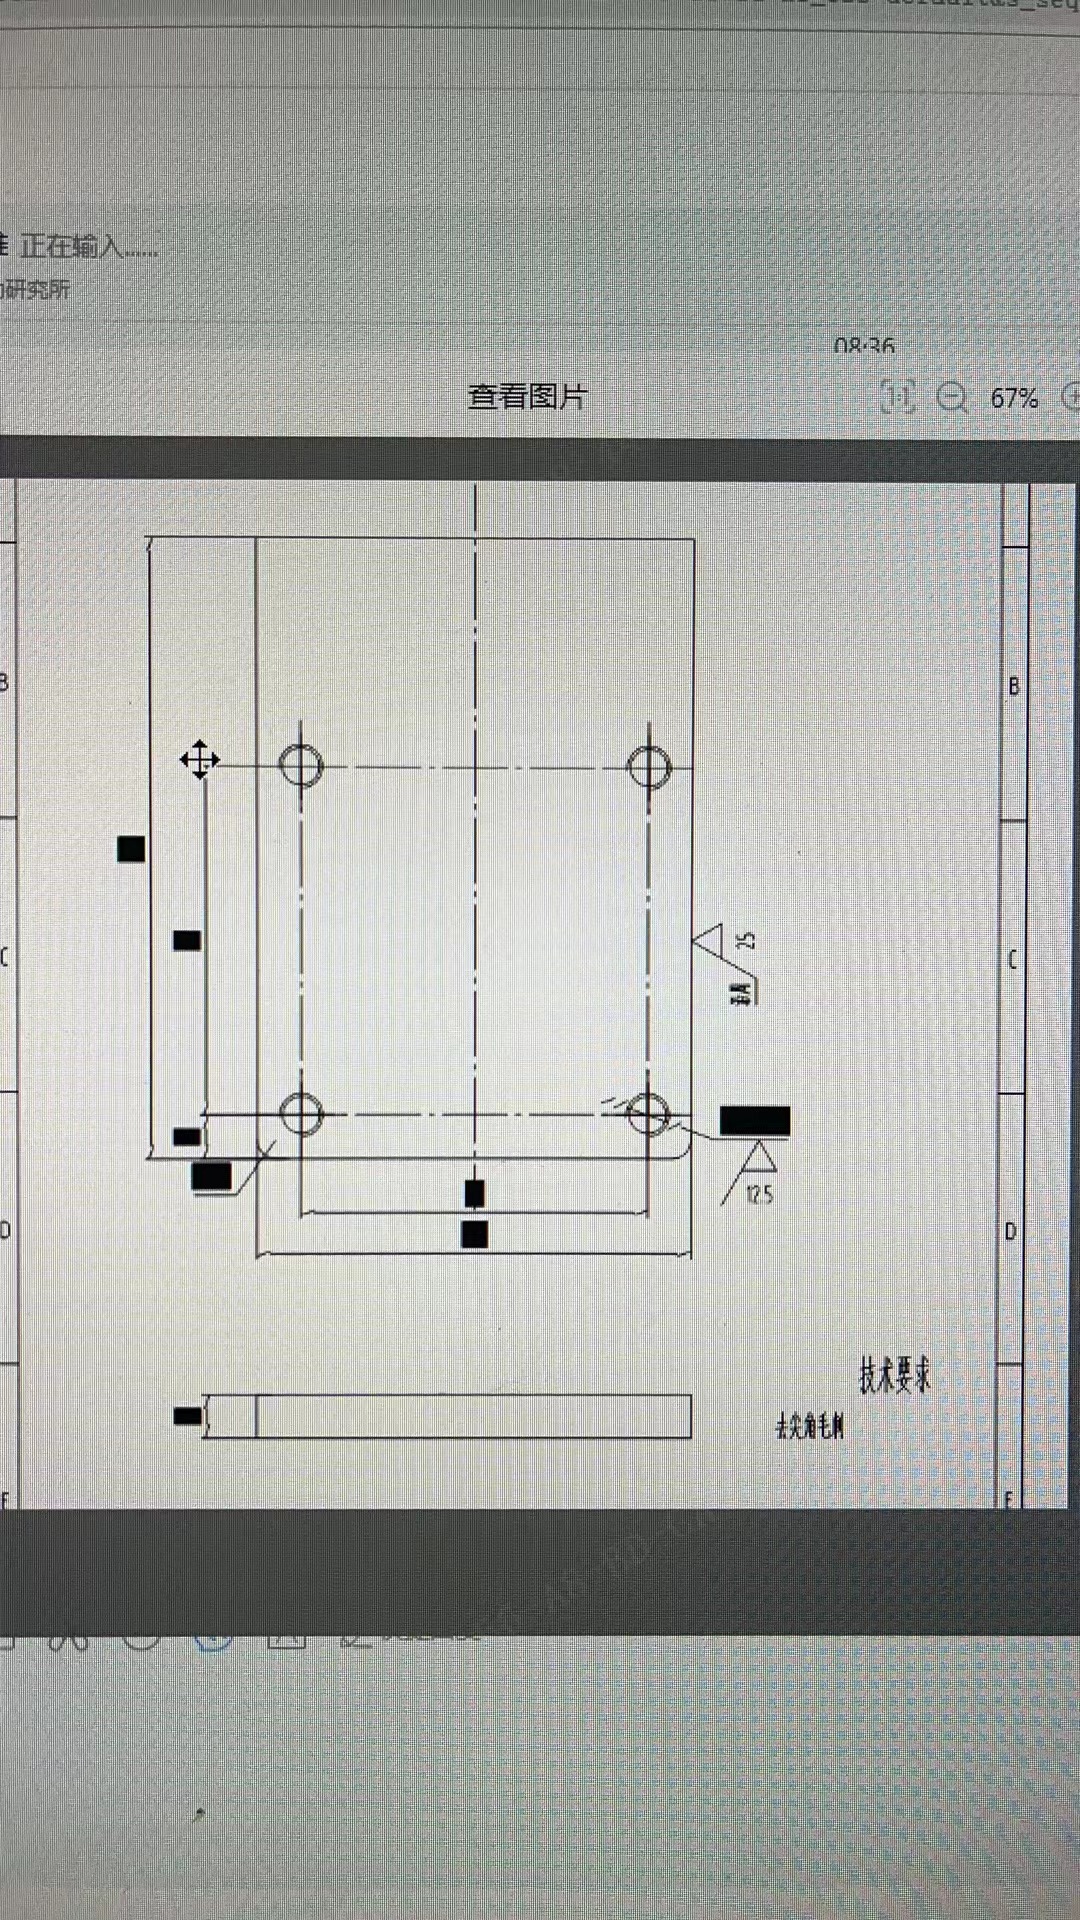 如何应对CAD中标注尺寸被填充覆盖导致无法看清数字的情况